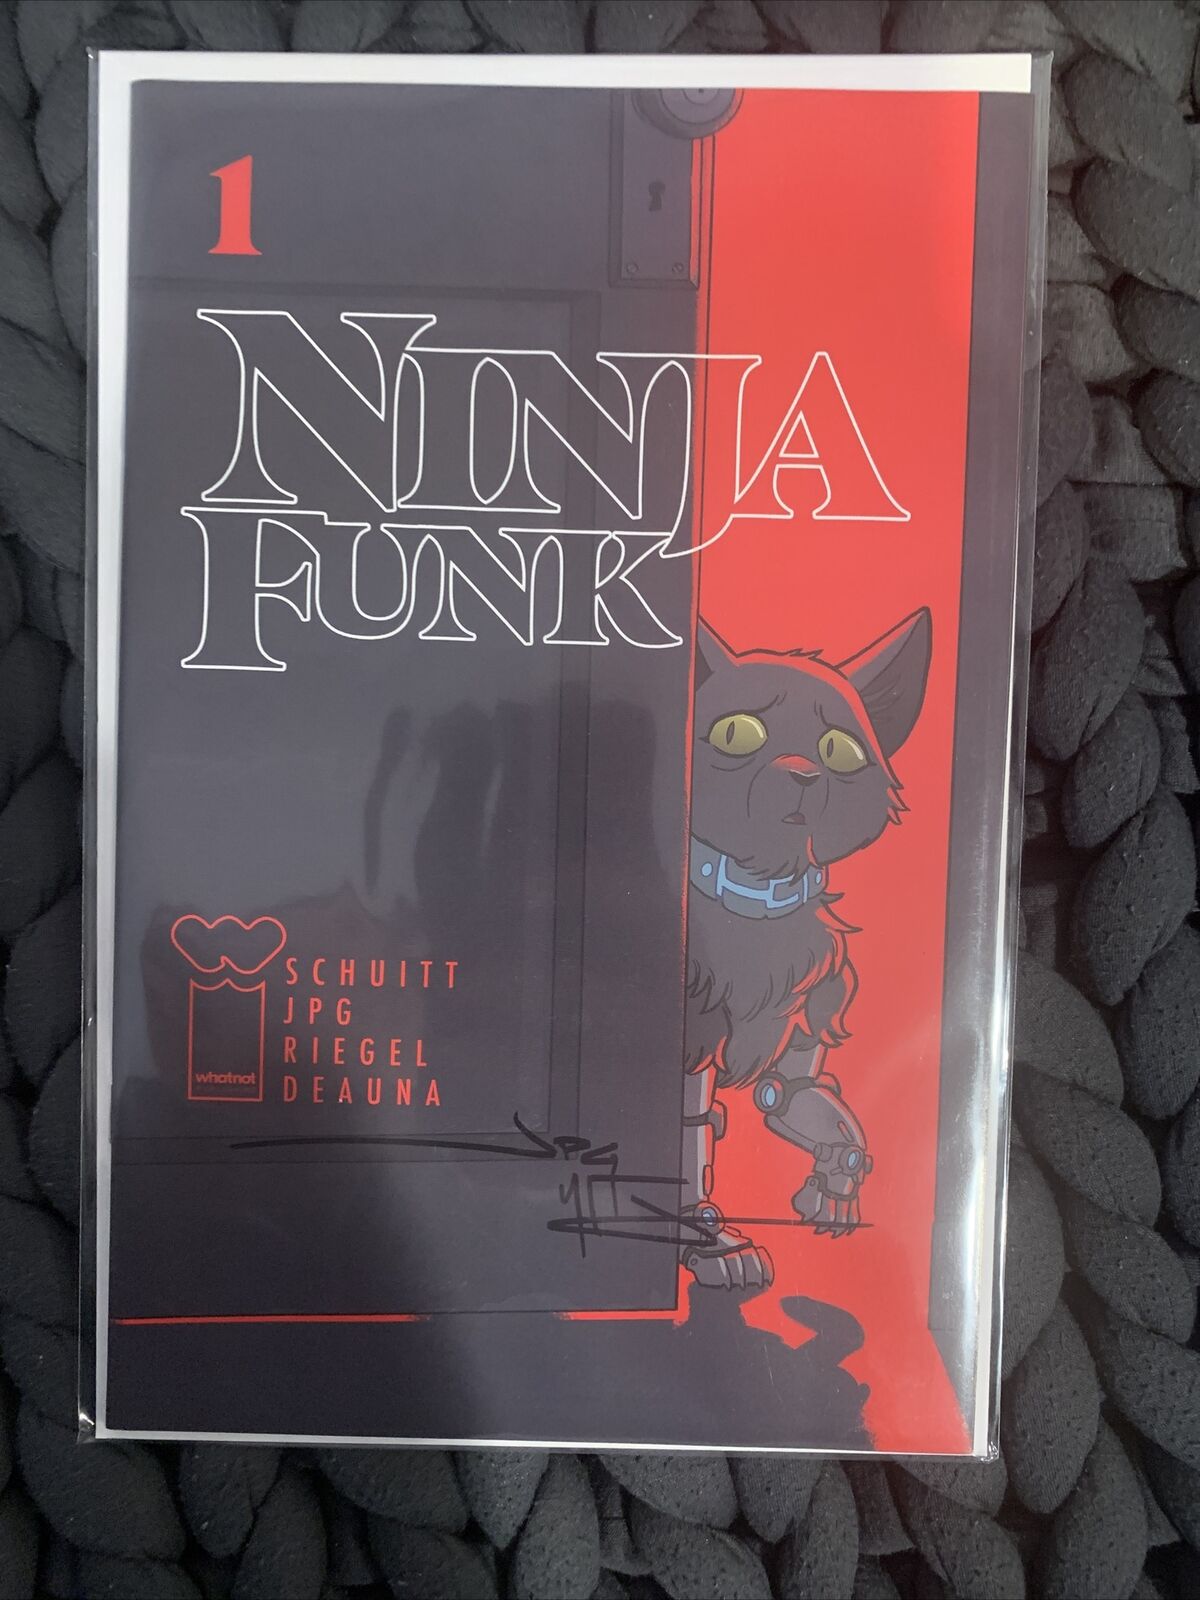 Ninja Funk #1 1:10 Tony Fleecs Stray Dogs Variant Signed by JPG McFly with COA